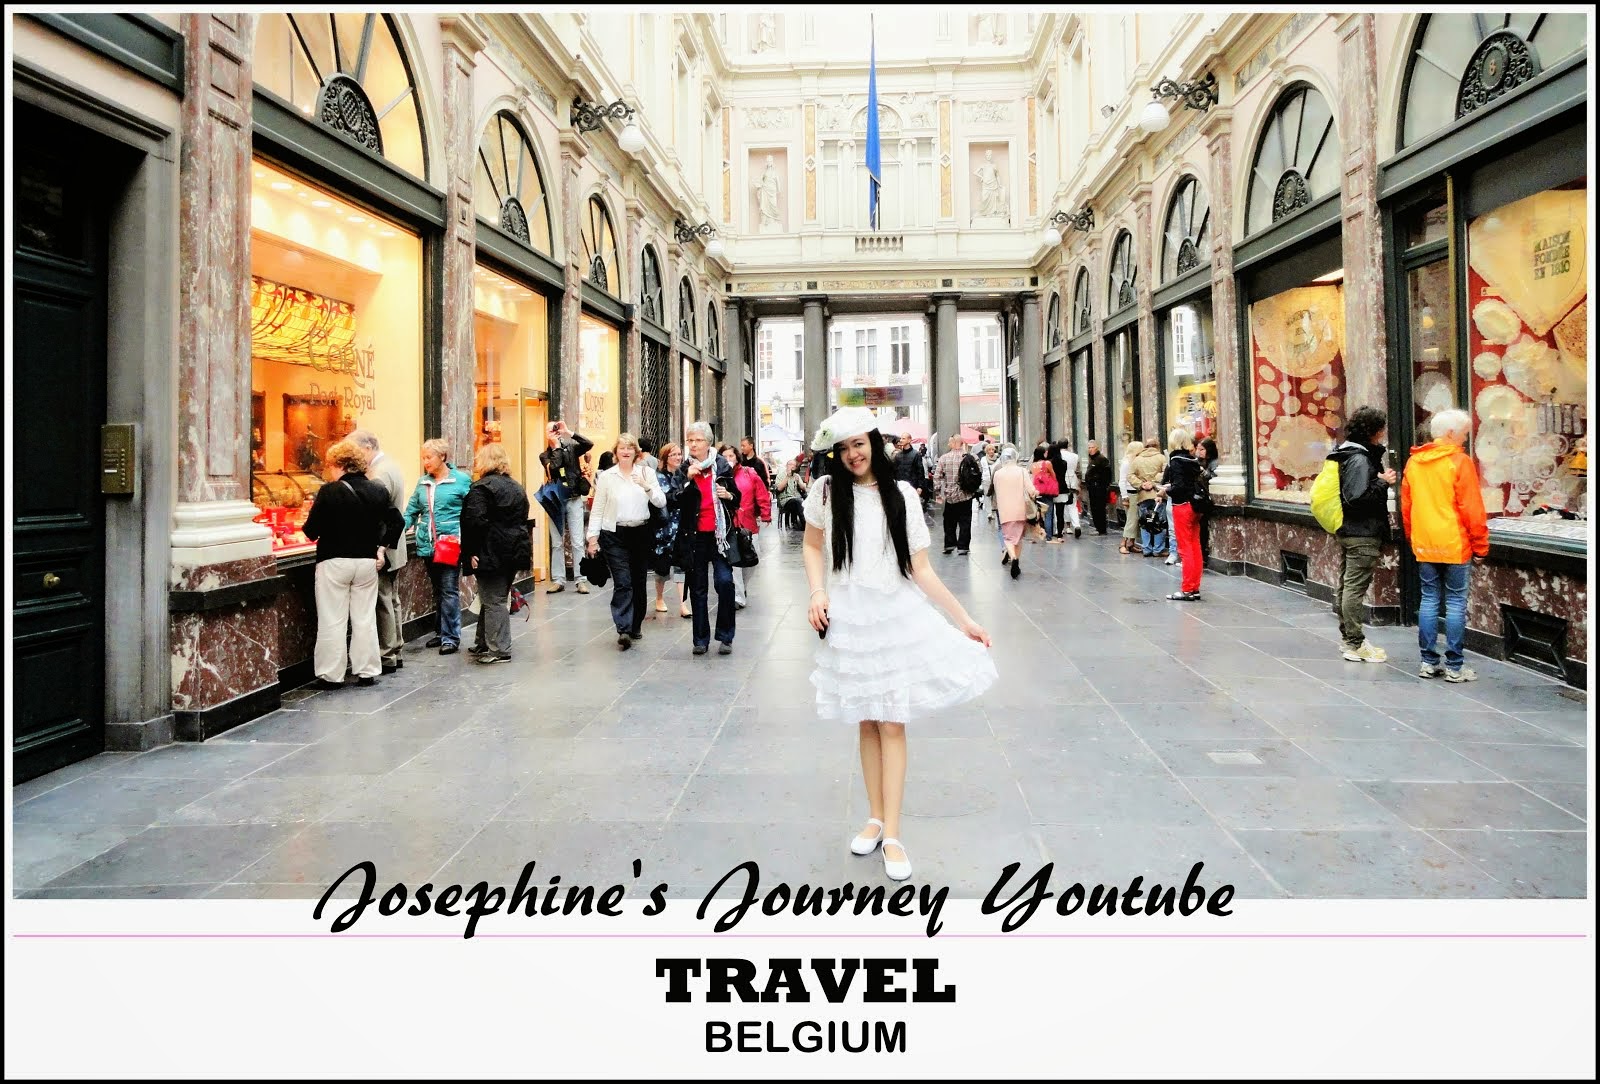 Josephine's Journey